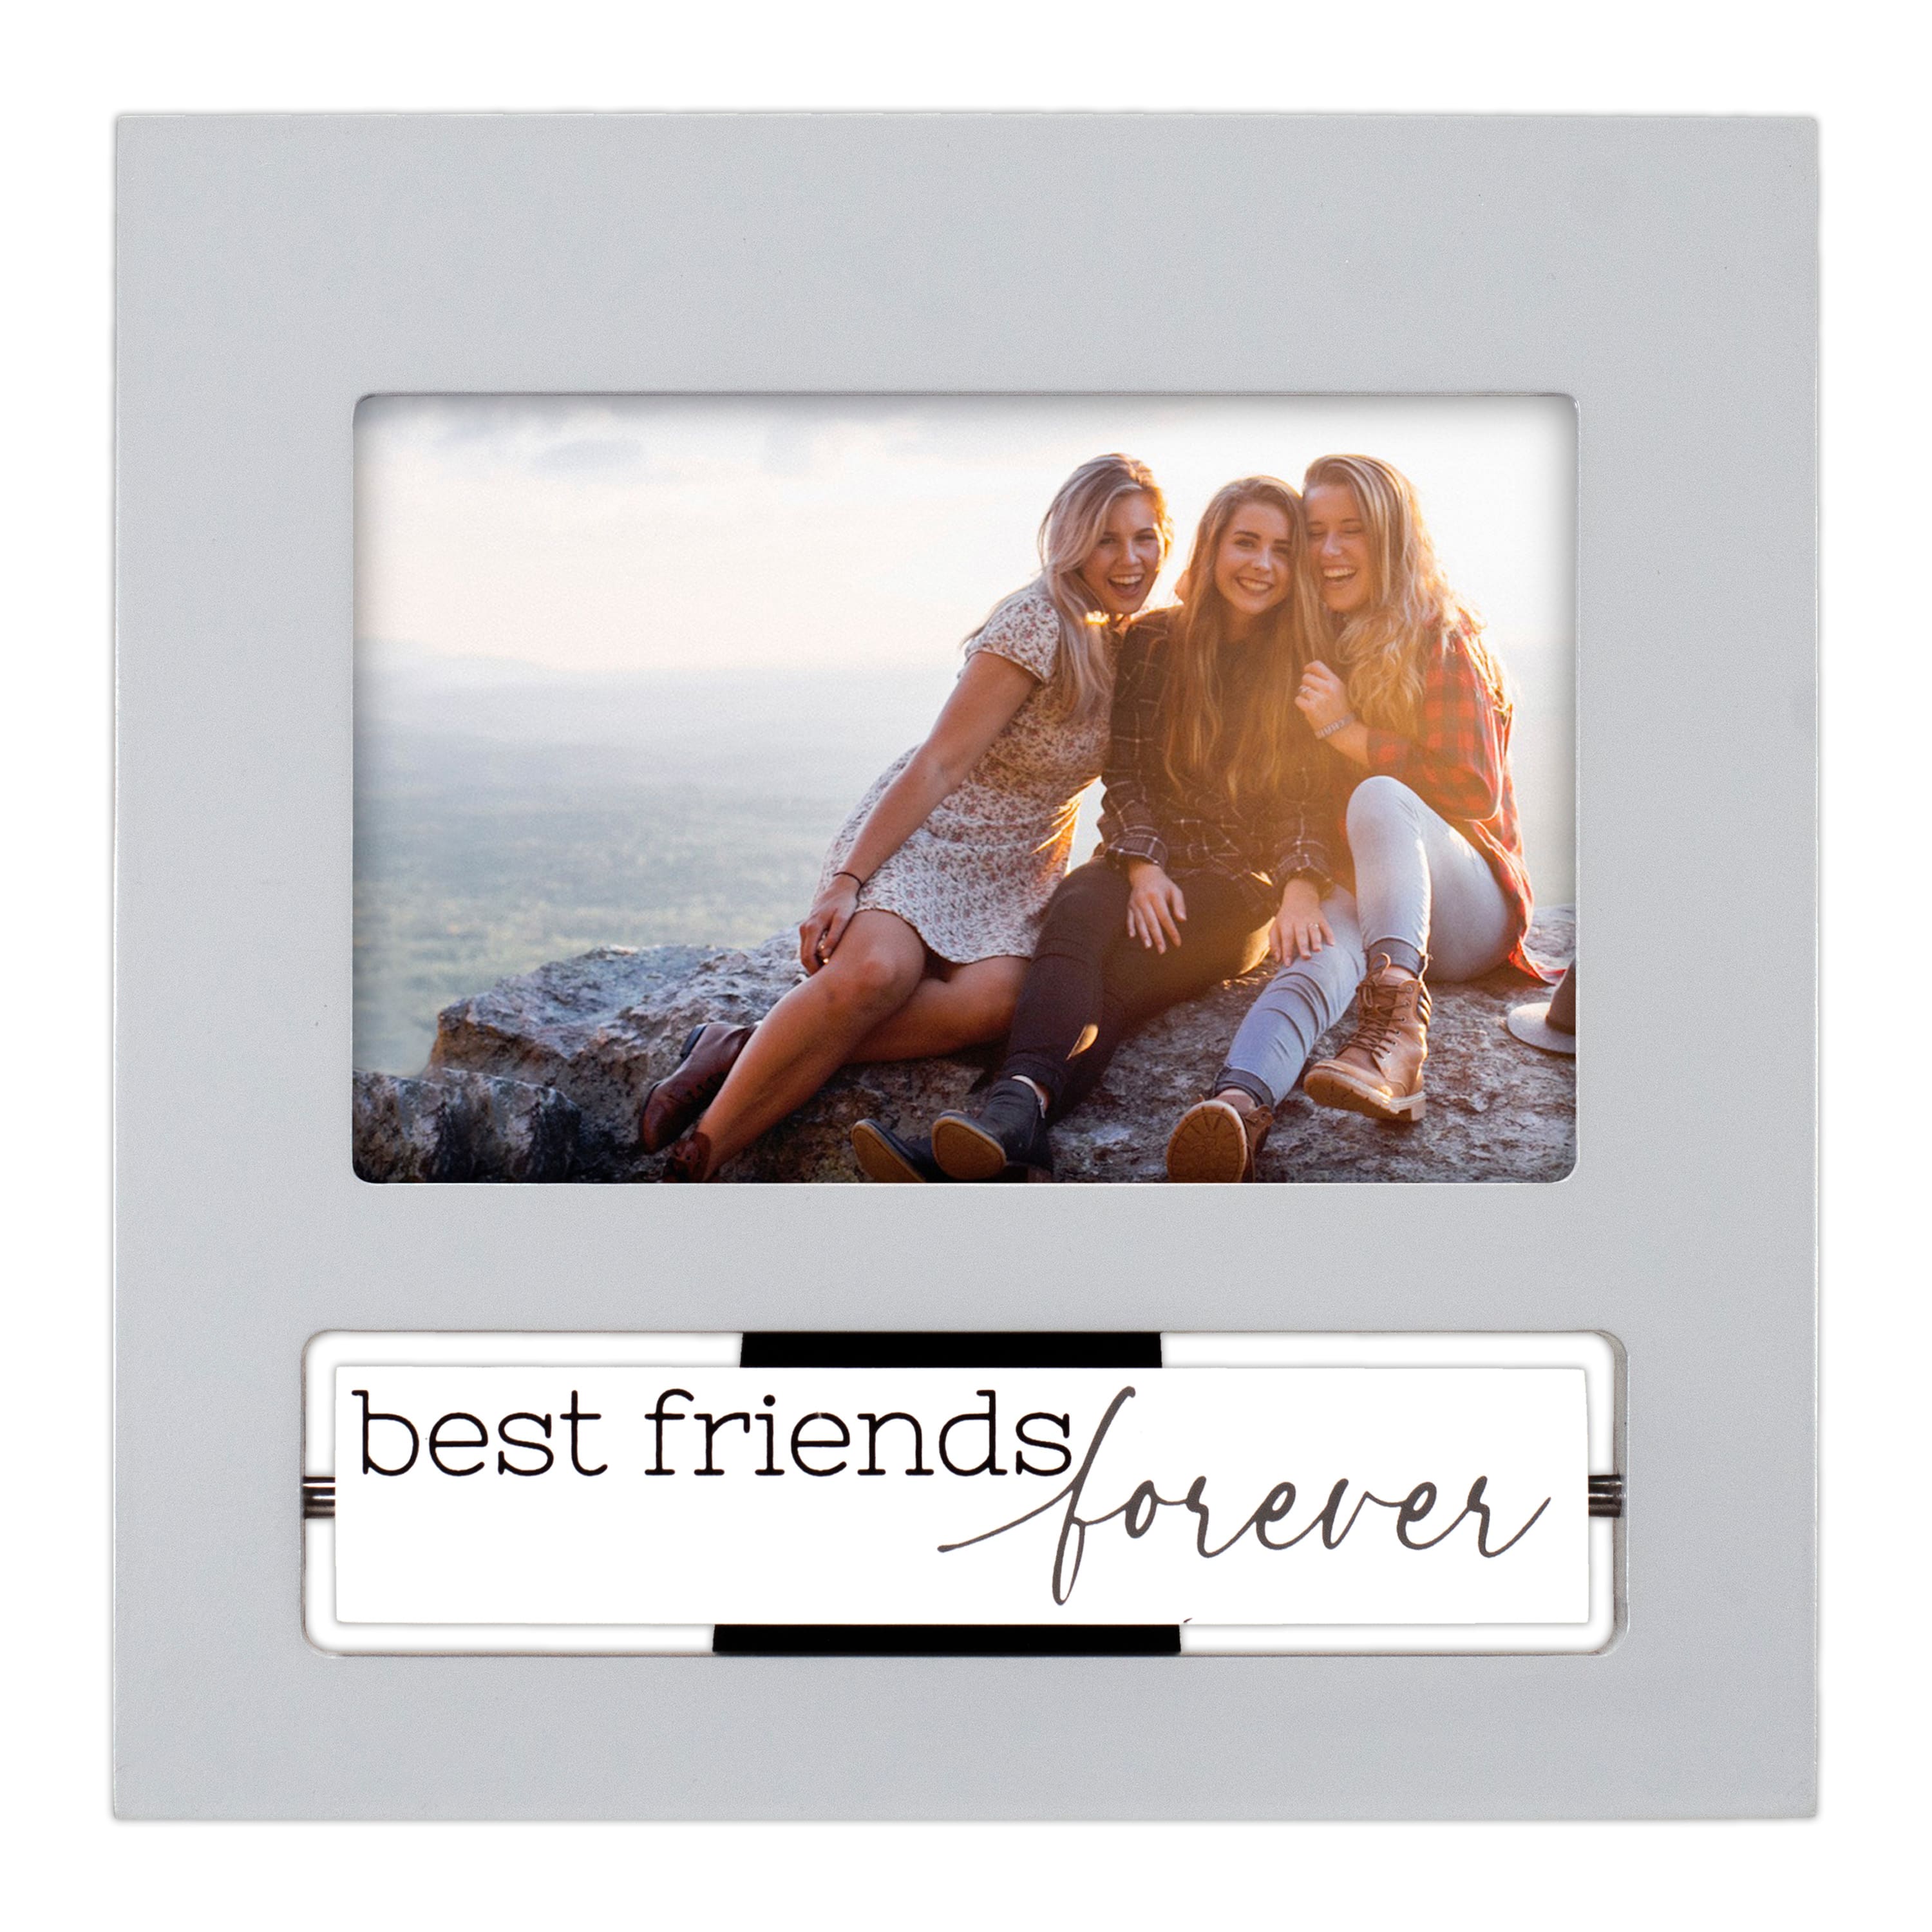 Malden Best Friends Are Never Forgotten Frame (4x6)